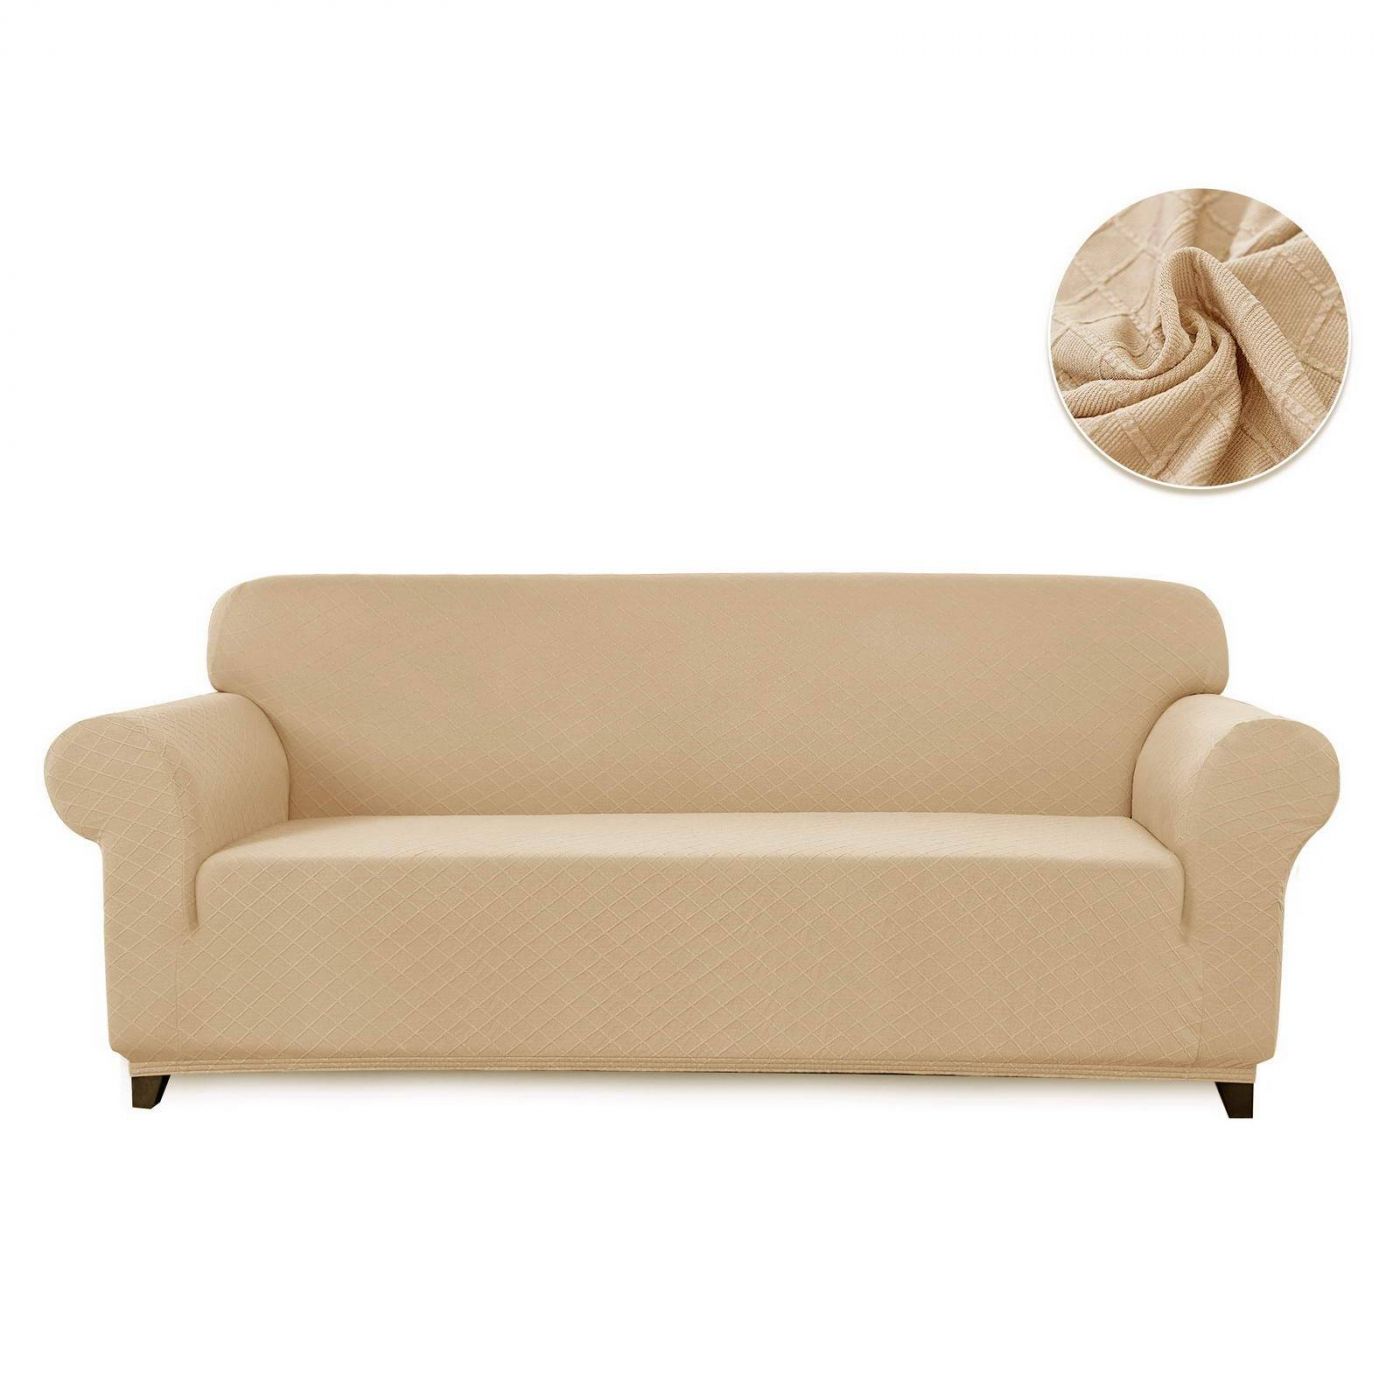 Чехол для дивана Илиана цвет: молочный (Двухместный), размер Без наволочек sofi881470 Чехол для дивана Илиана цвет: молочный (Двухместный) - фото 1